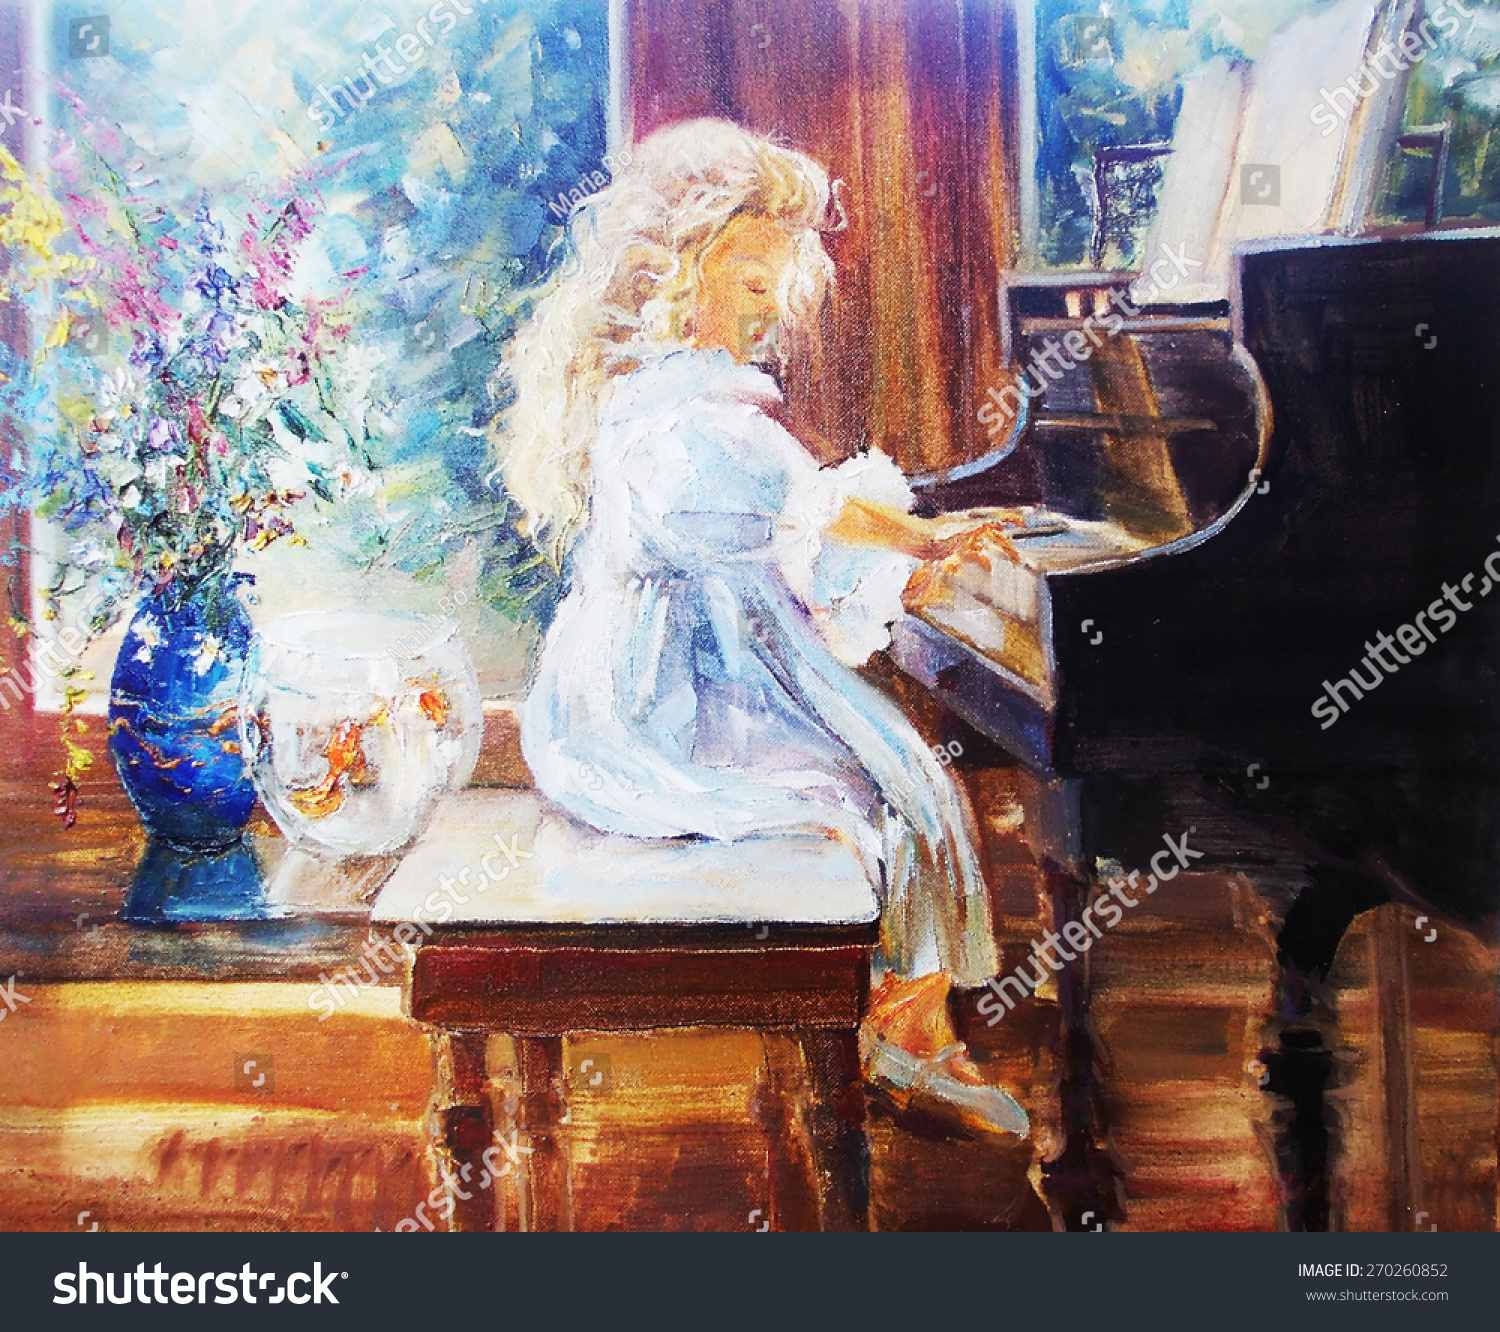 ピアノを弾く油絵のかわいい女の子 のイラスト素材